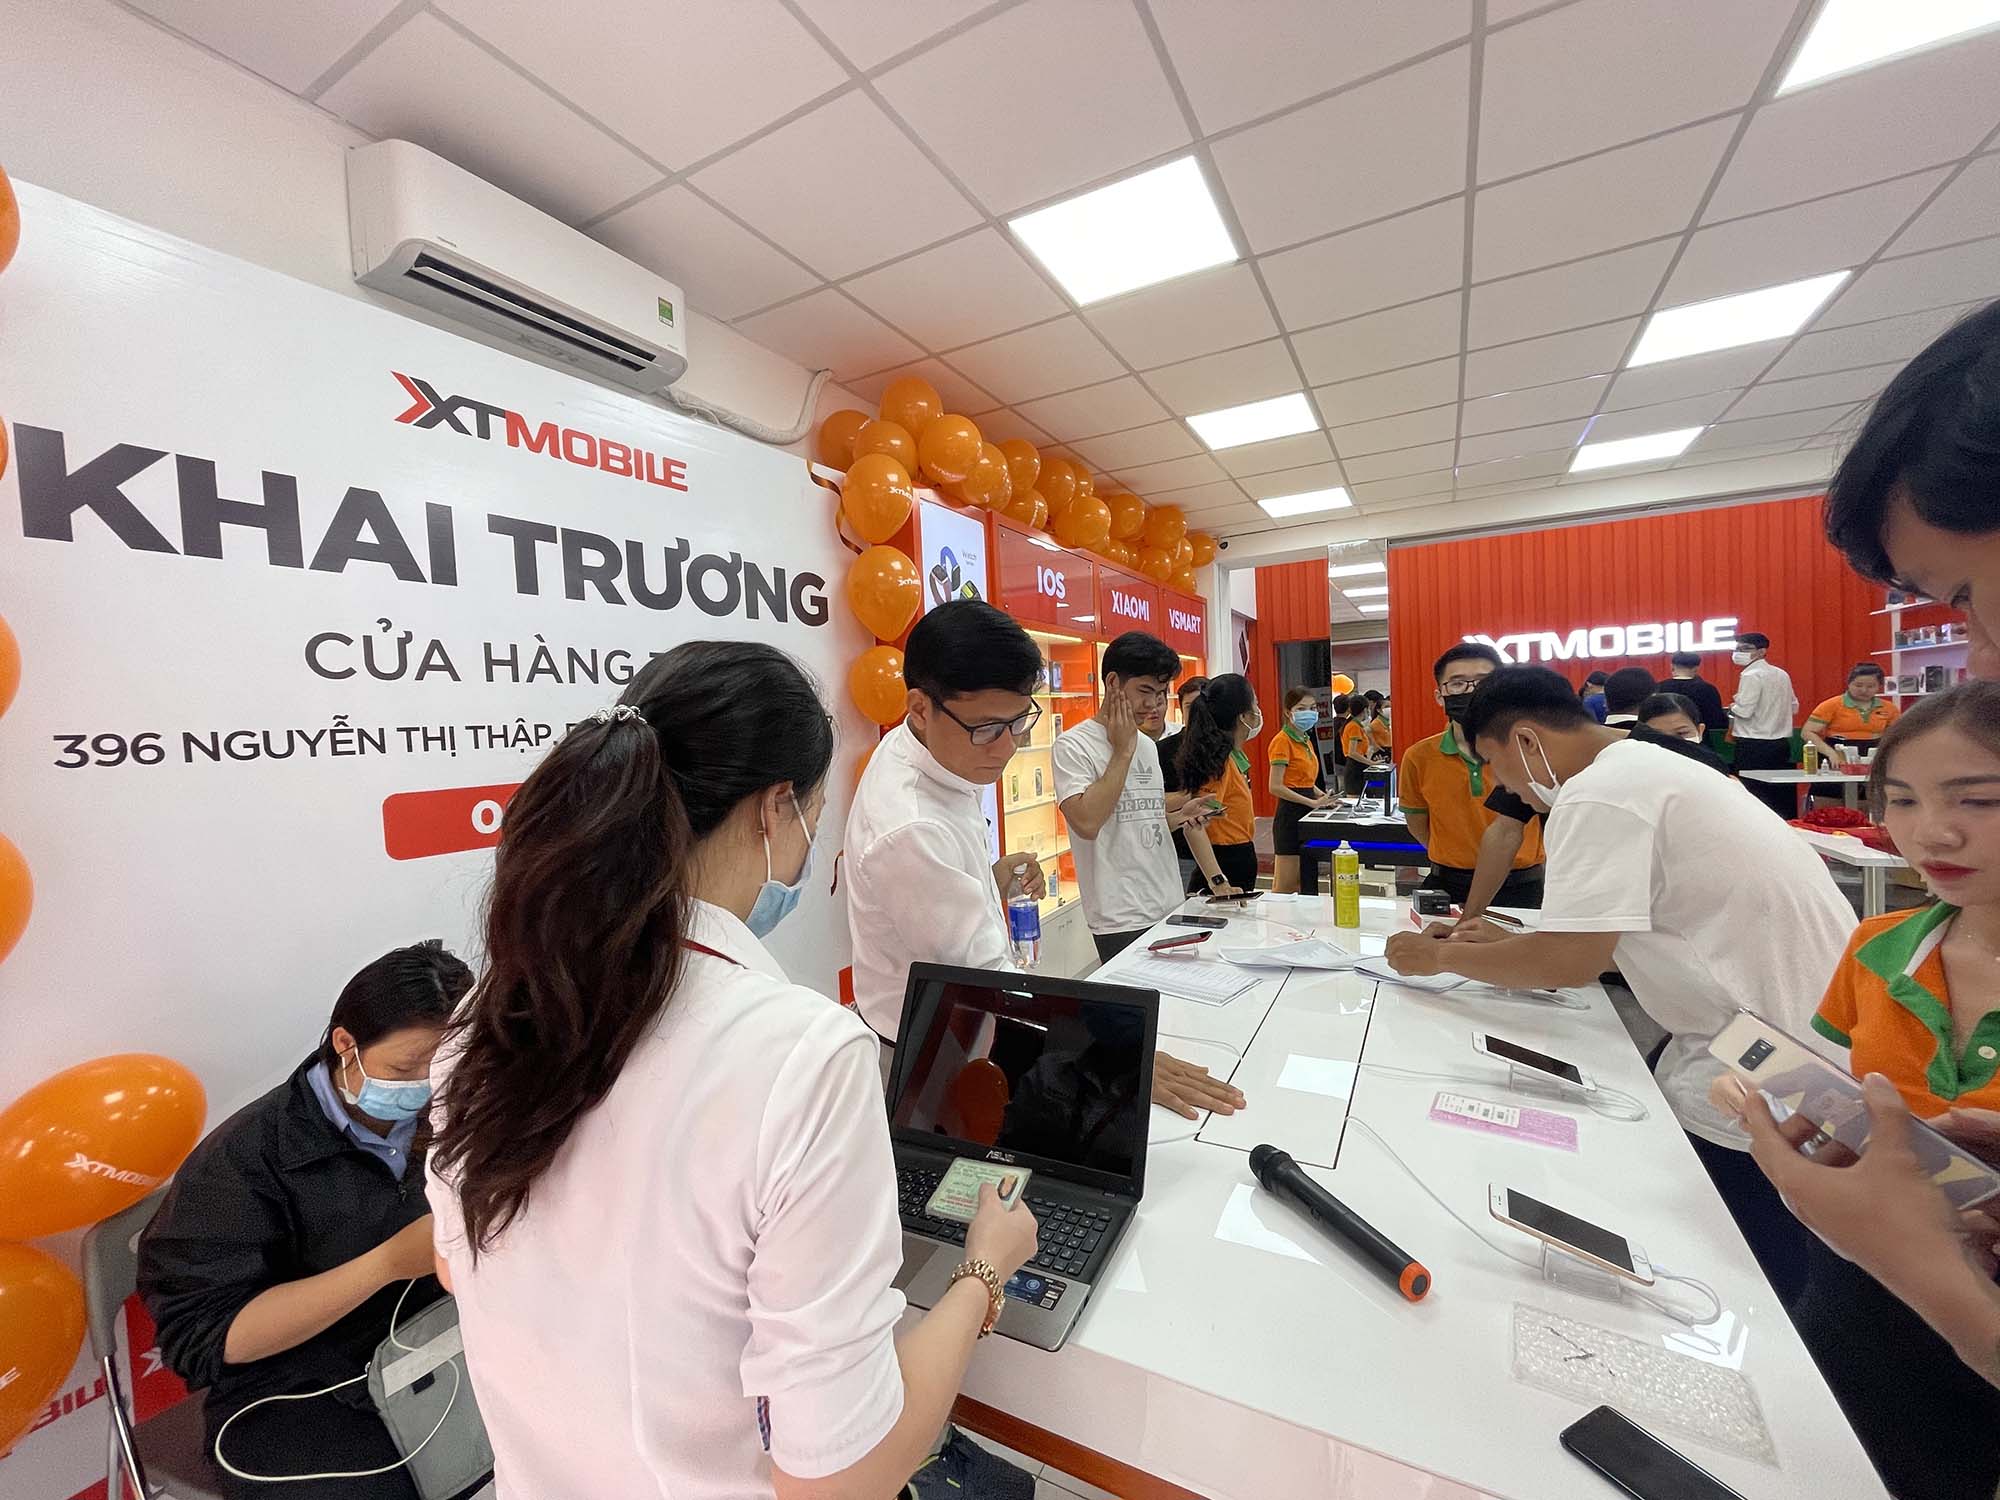 XTmobile khai trương cửa hàng thứ 7 tại 396 Nguyễn Thị Thập, Phường Tân Quy, Quận 7: iPhone 12, XS và Galaxy Z Fold 5G giảm đến 5.2 triệu đồng